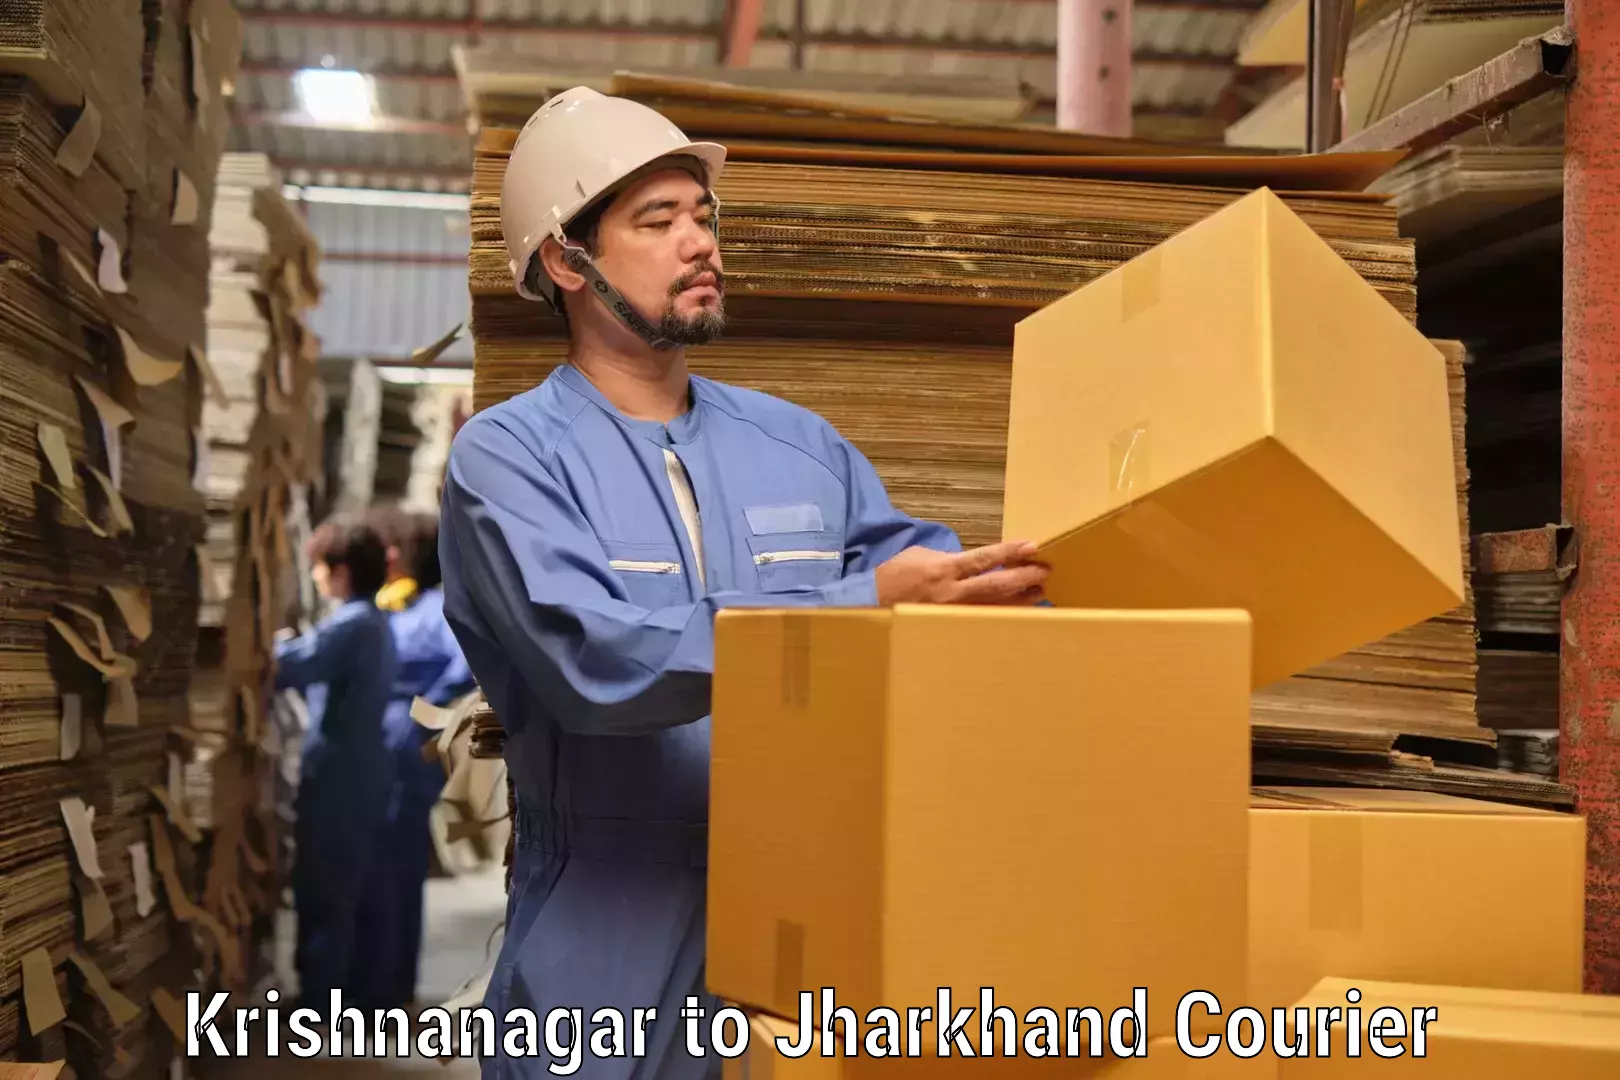 Special handling courier Krishnanagar to Dumka